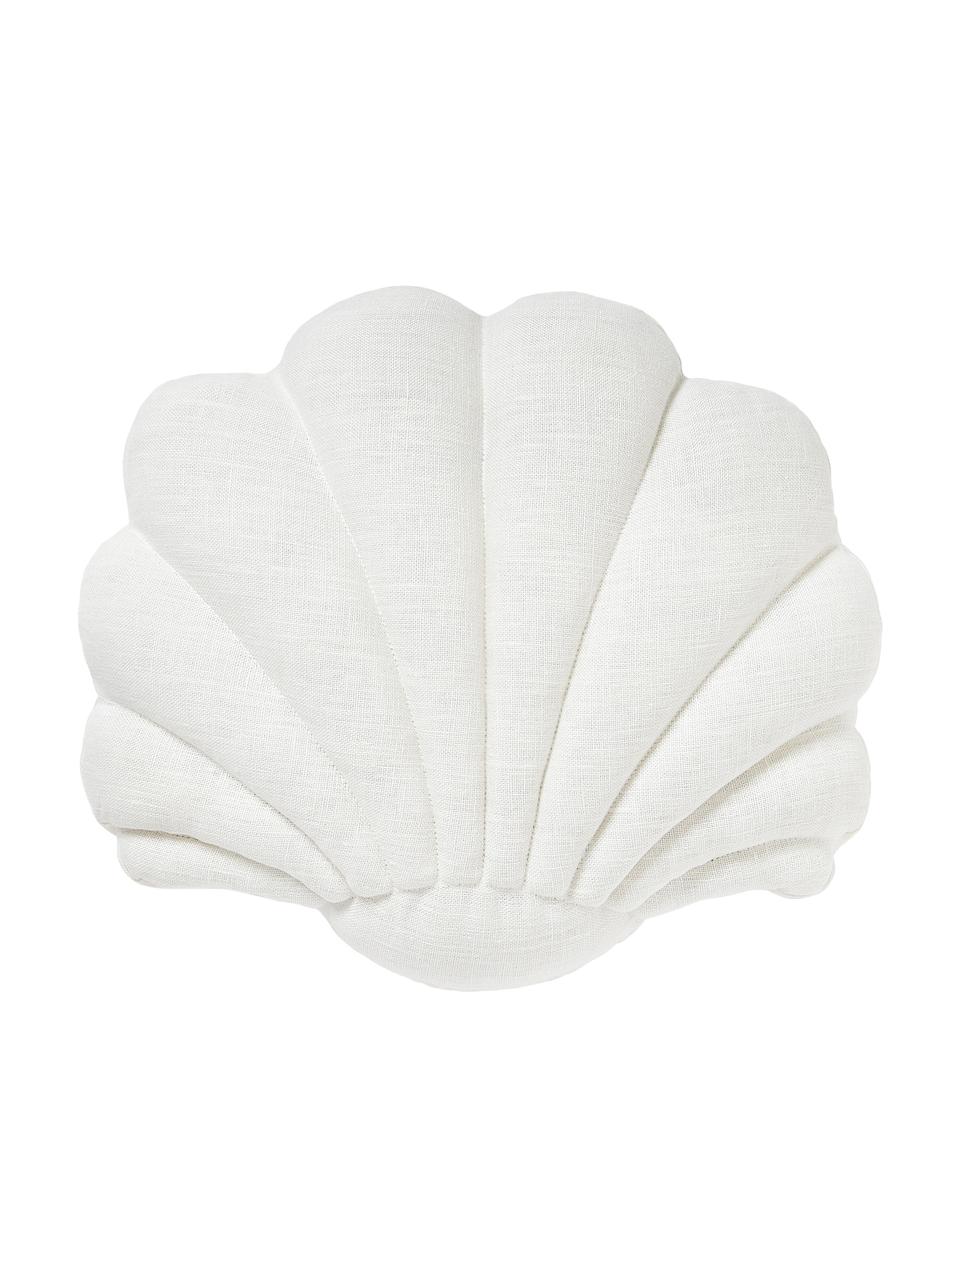 Linnen kussen Shell in schelp vorm, Crèmewit, B 34 x L 38 cm